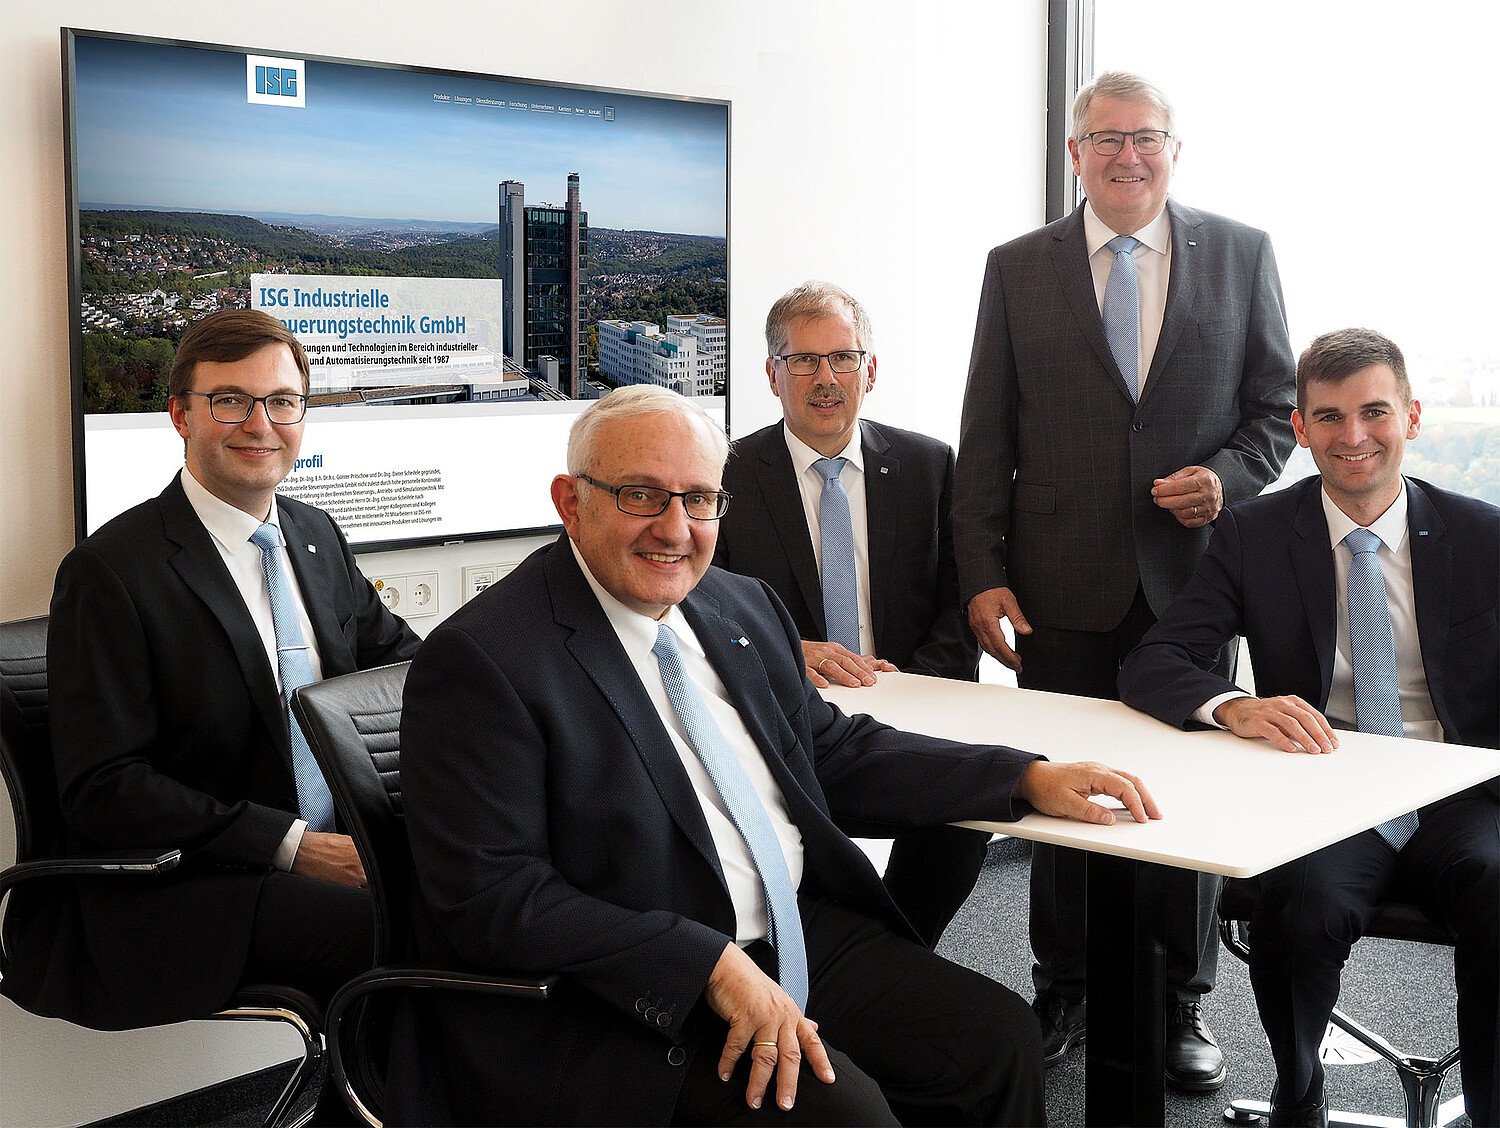 Management board of the ISG Industrielle Steuerungstechnik GmbH